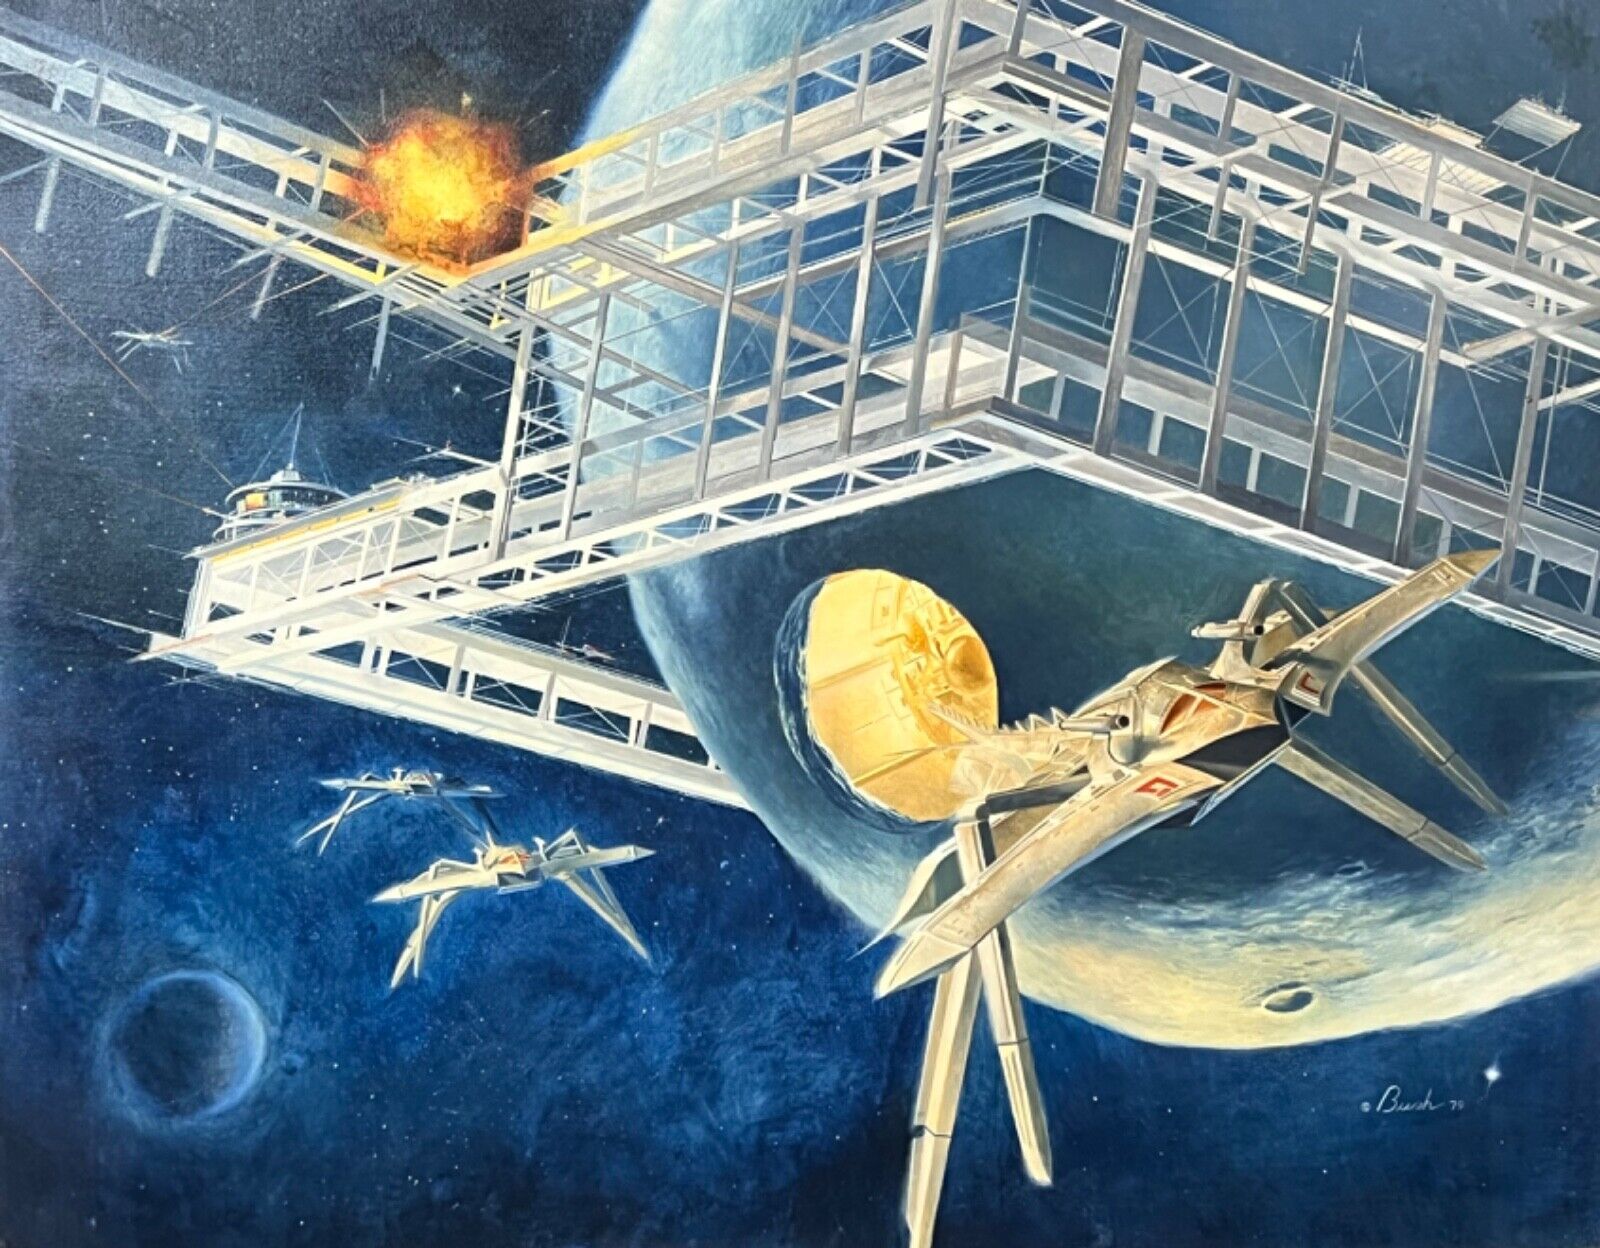 George A. Bush Original science fiction oil painting, Space Battle 1979